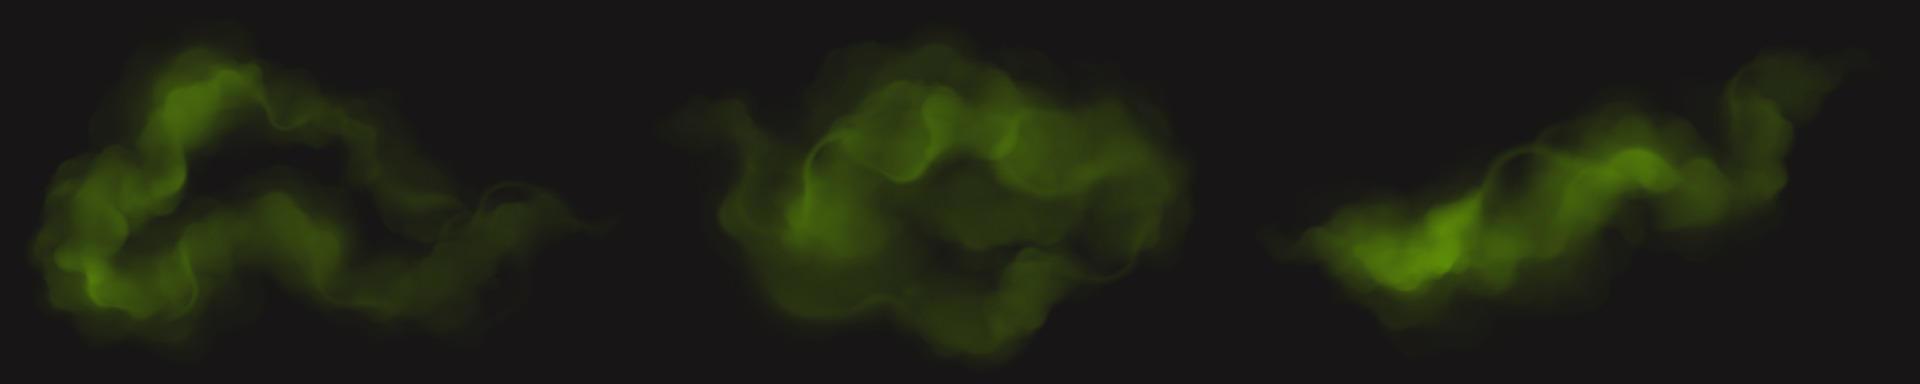 Reihe von grünen Rauchwolken auf schwarzem Hintergrund vektor